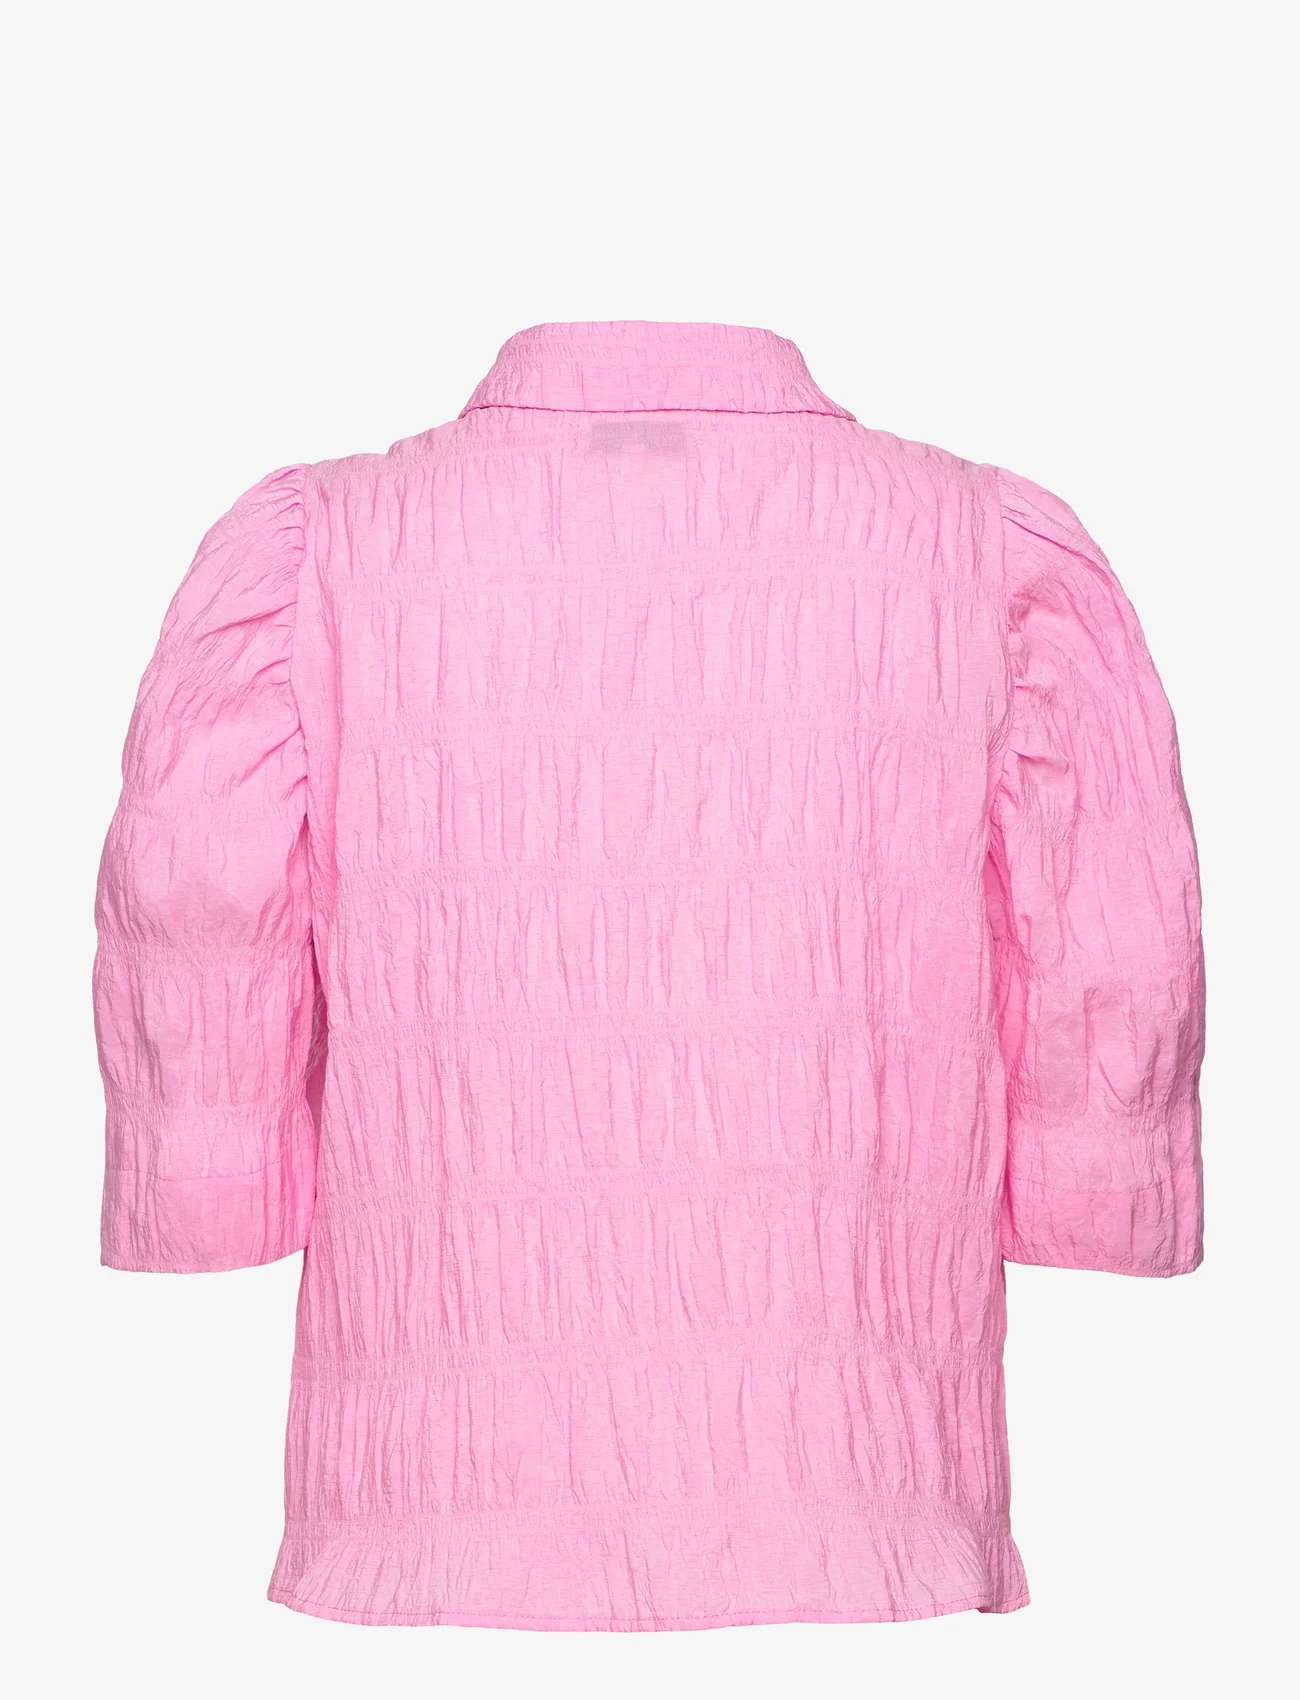 Lollys Laundry - Bono Shirt - kortärmade skjortor - 87 bubblegum - 1